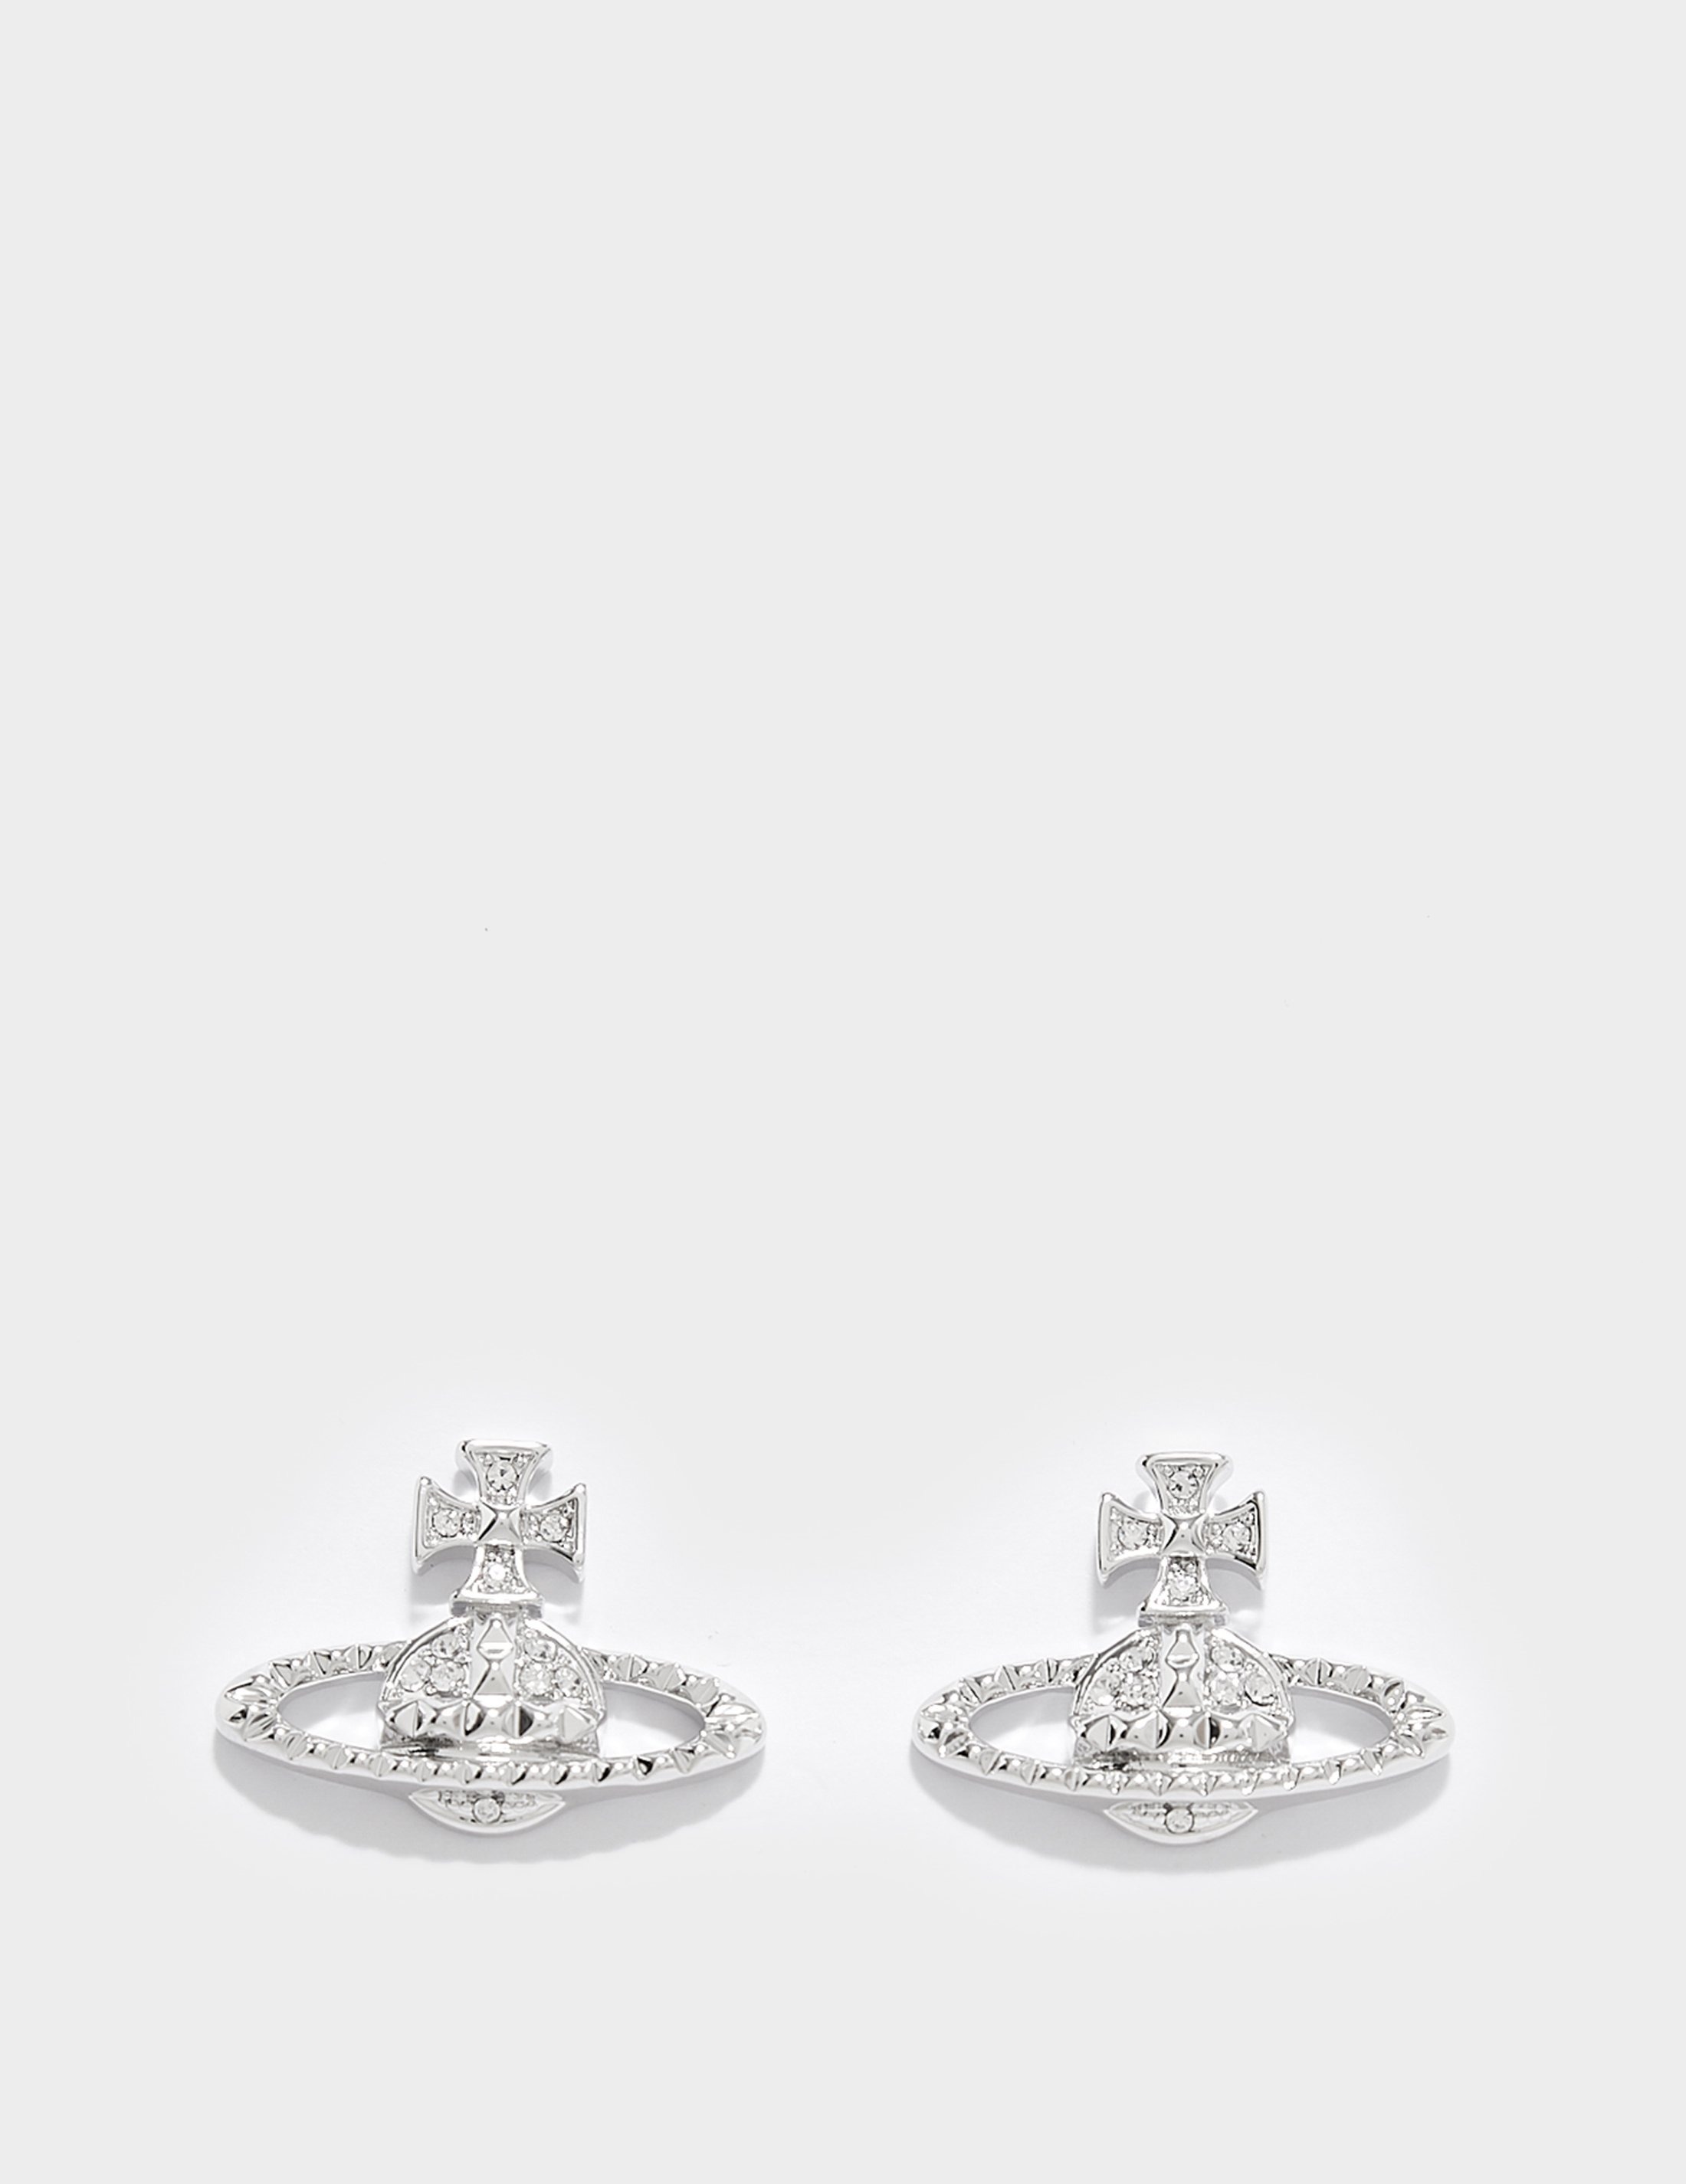 Grey Vivienne Westwood Mayfair Bas Relief Earrings | Tessuti